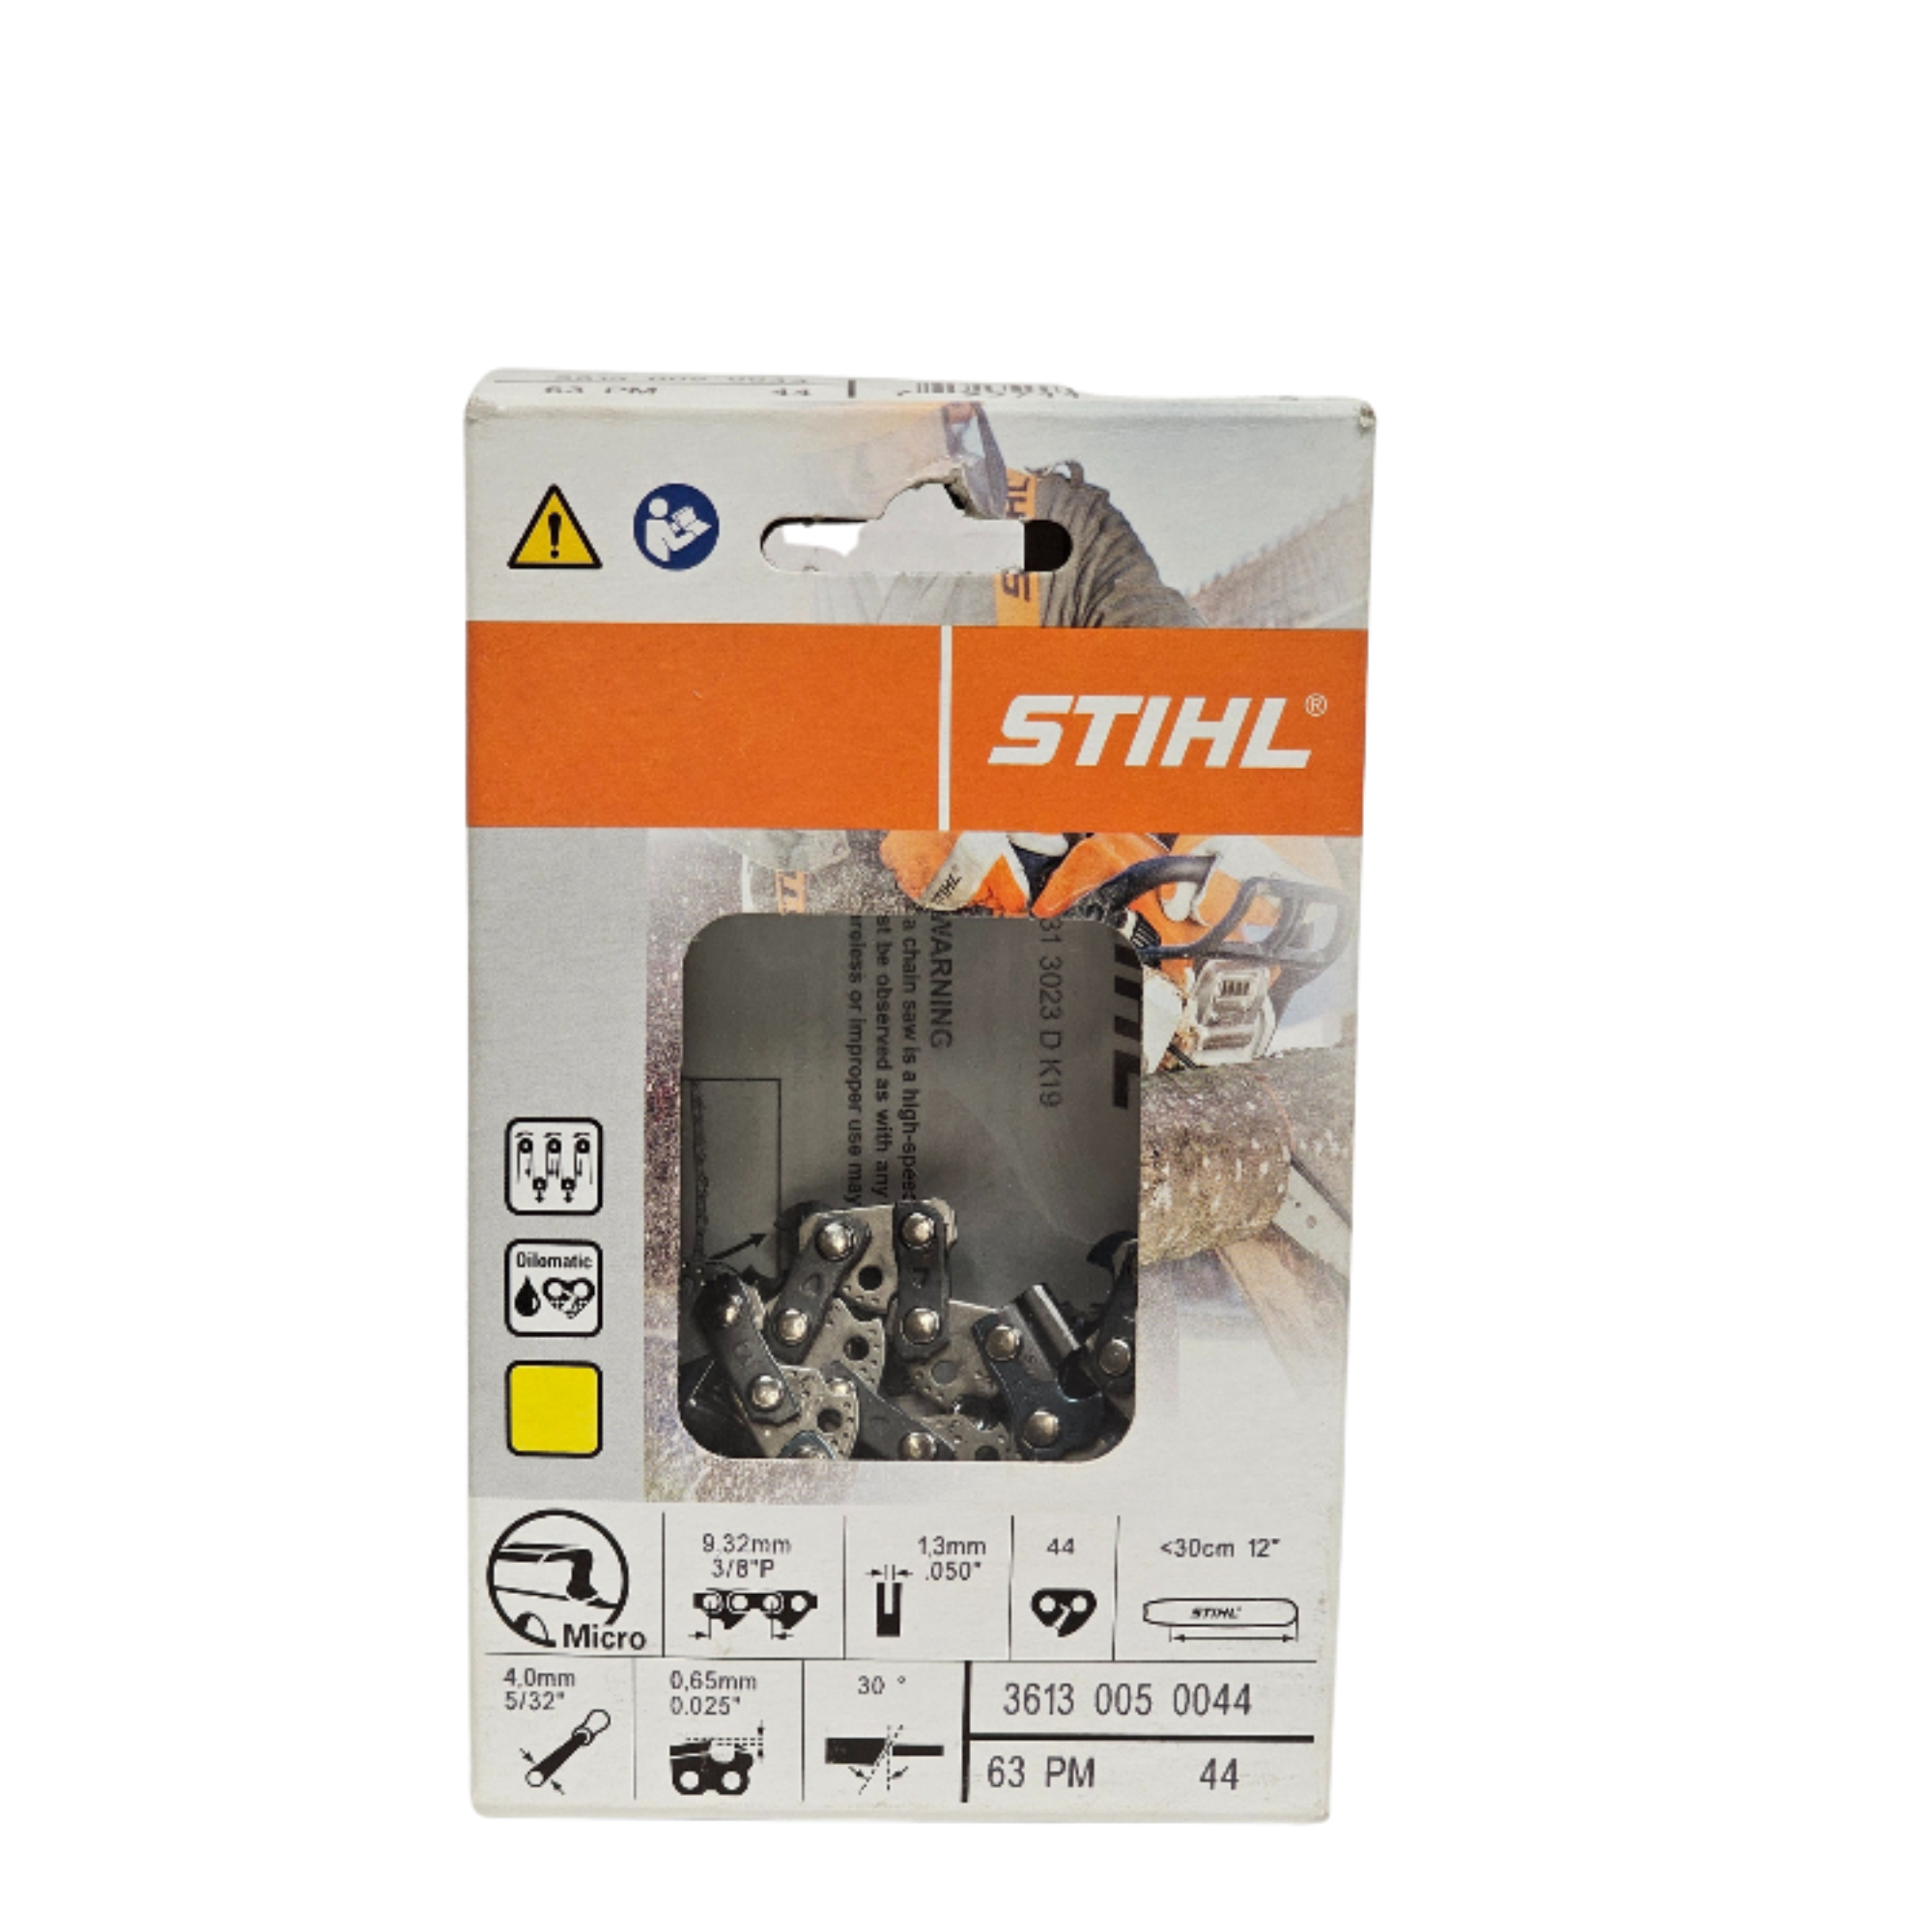 STIHL Oilomatic Picco Micro | 63 PM 44 | 12 in. | 44 Drive Links | Chainsaw Chain | 3613 005 0044